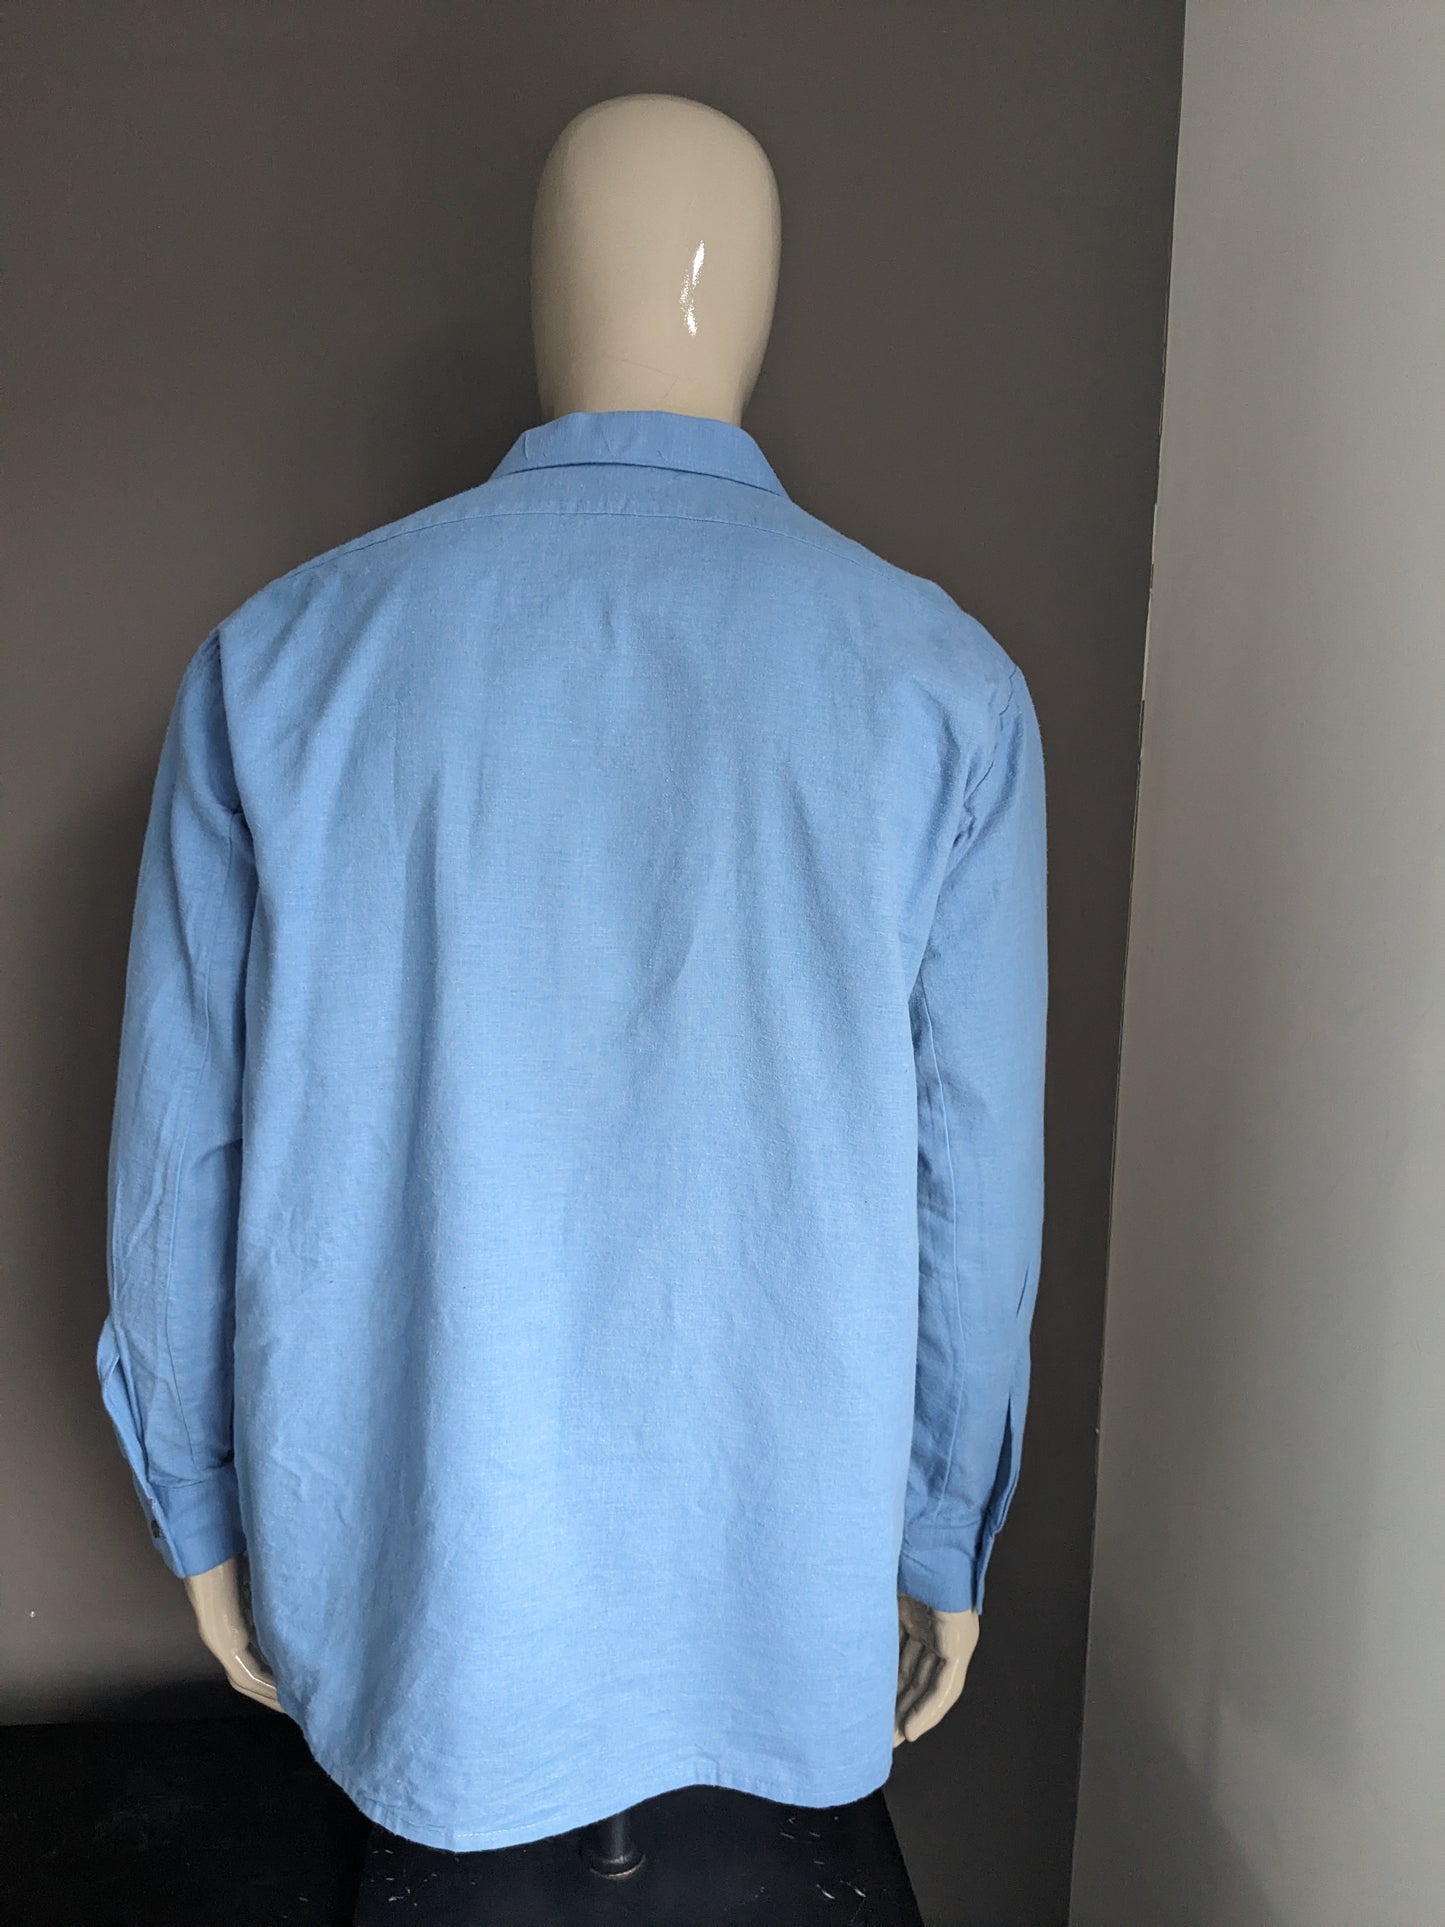 Vintage 70's overhemd met puntkraag. Blauw gekleurd. Maat 2XL / XXL.